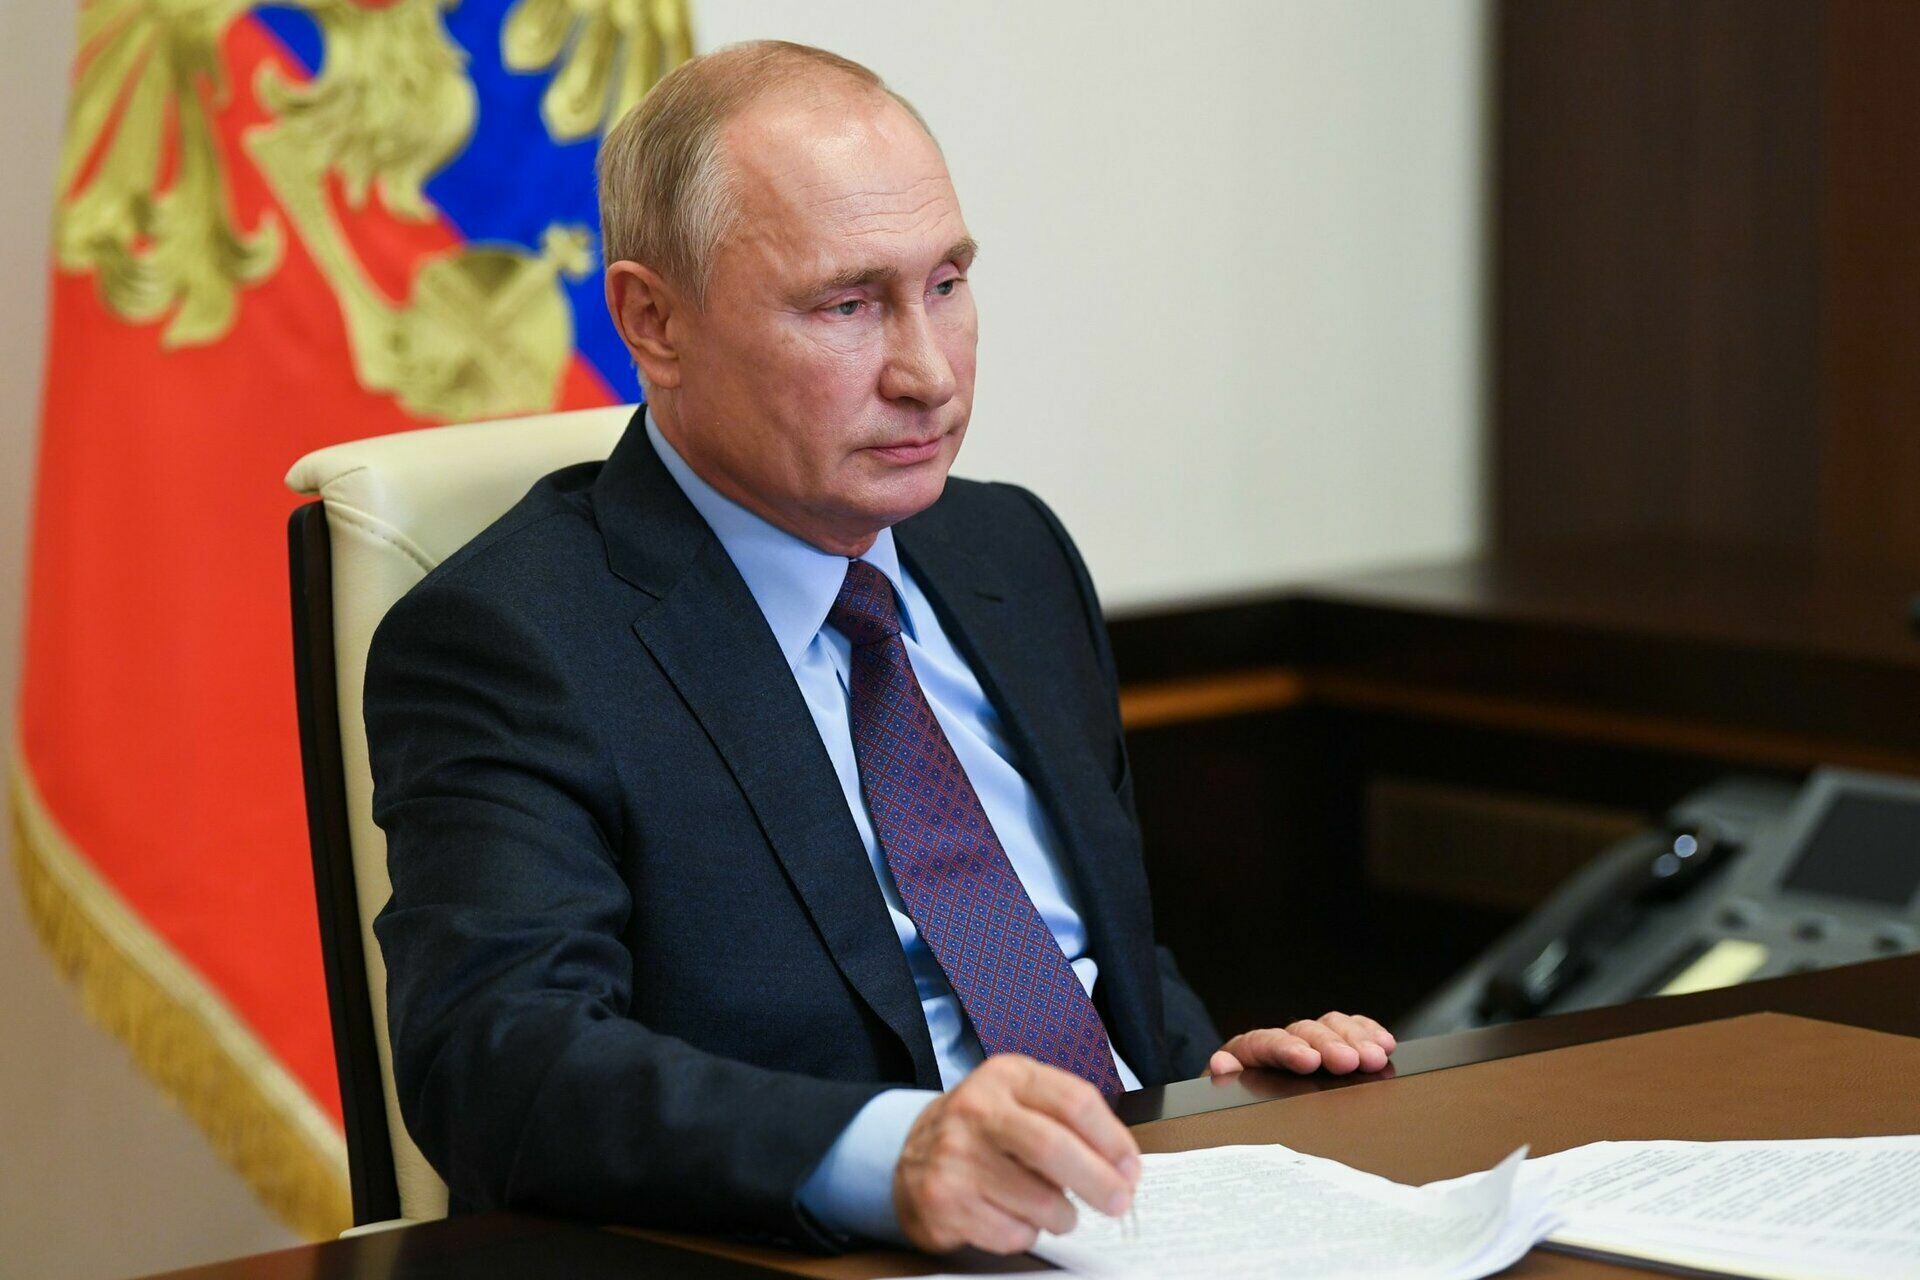 Владимир Путин поддержал введение внешнего управления в компаниях, уходящих из РФ